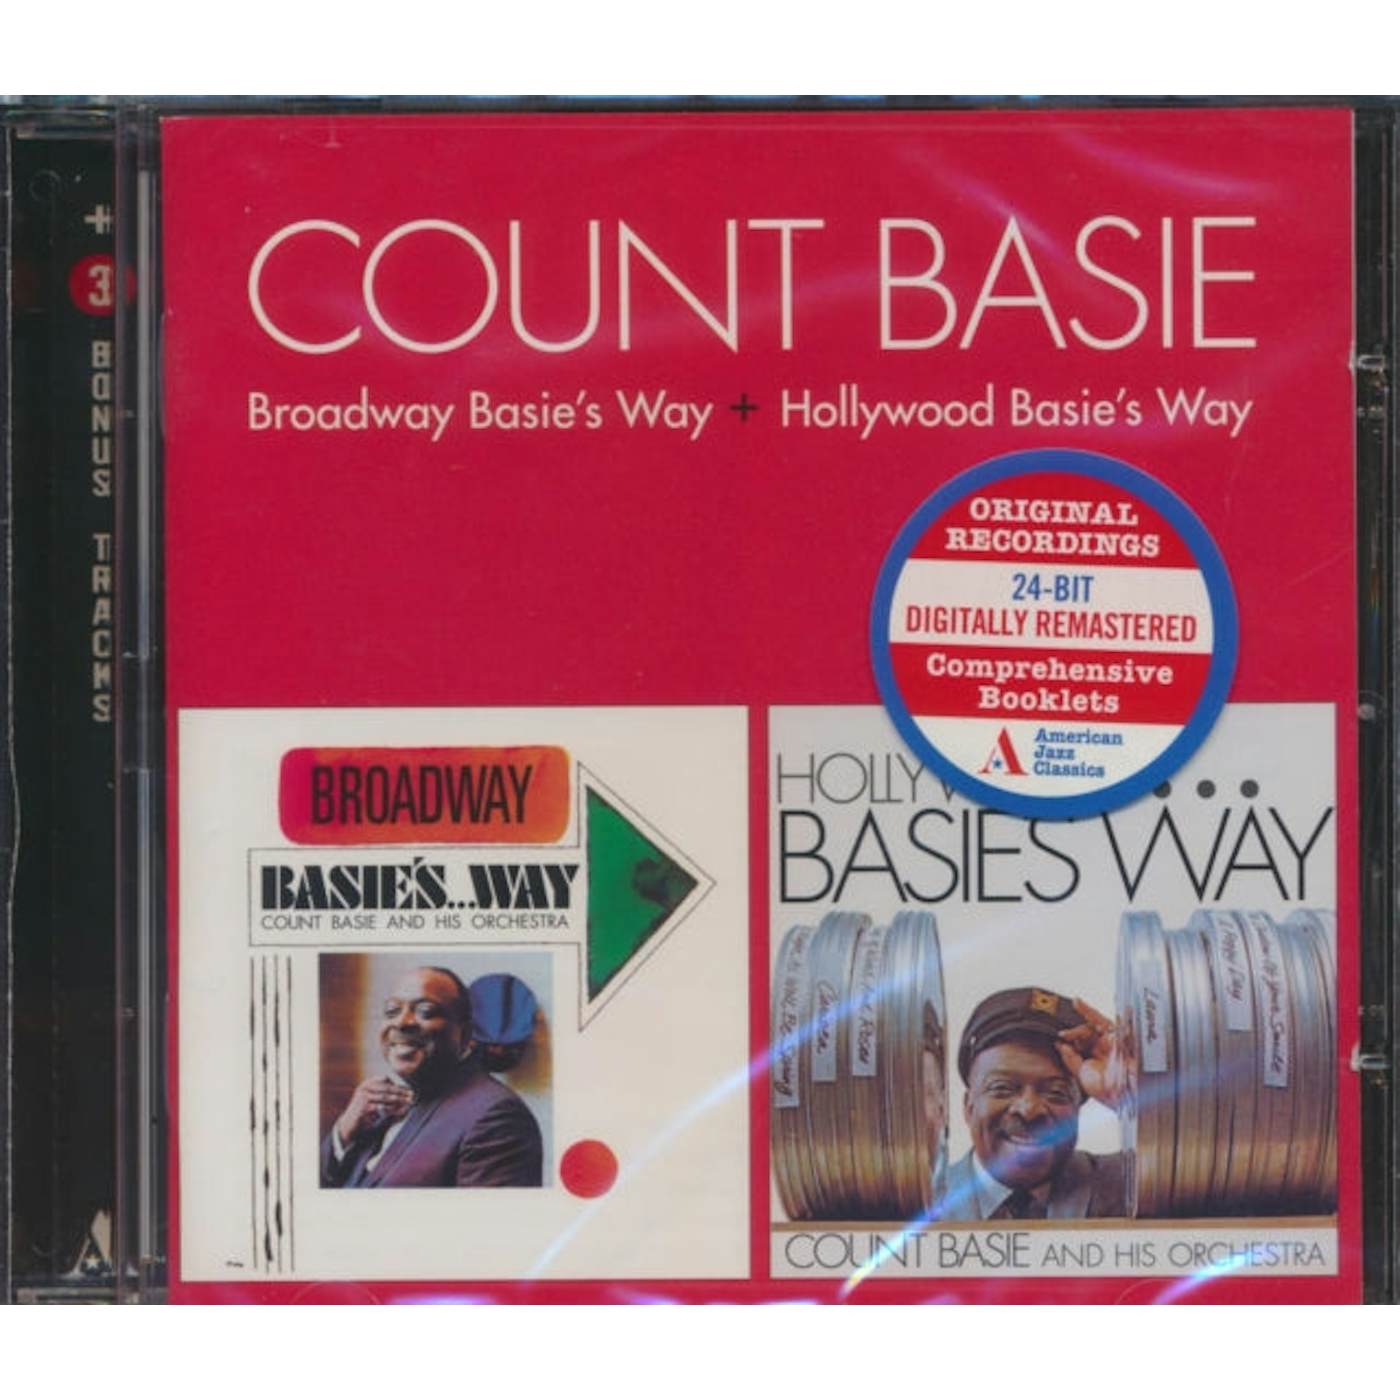 Count Basie CD - Broadway Basie's Way / Hollywood Basie's Way